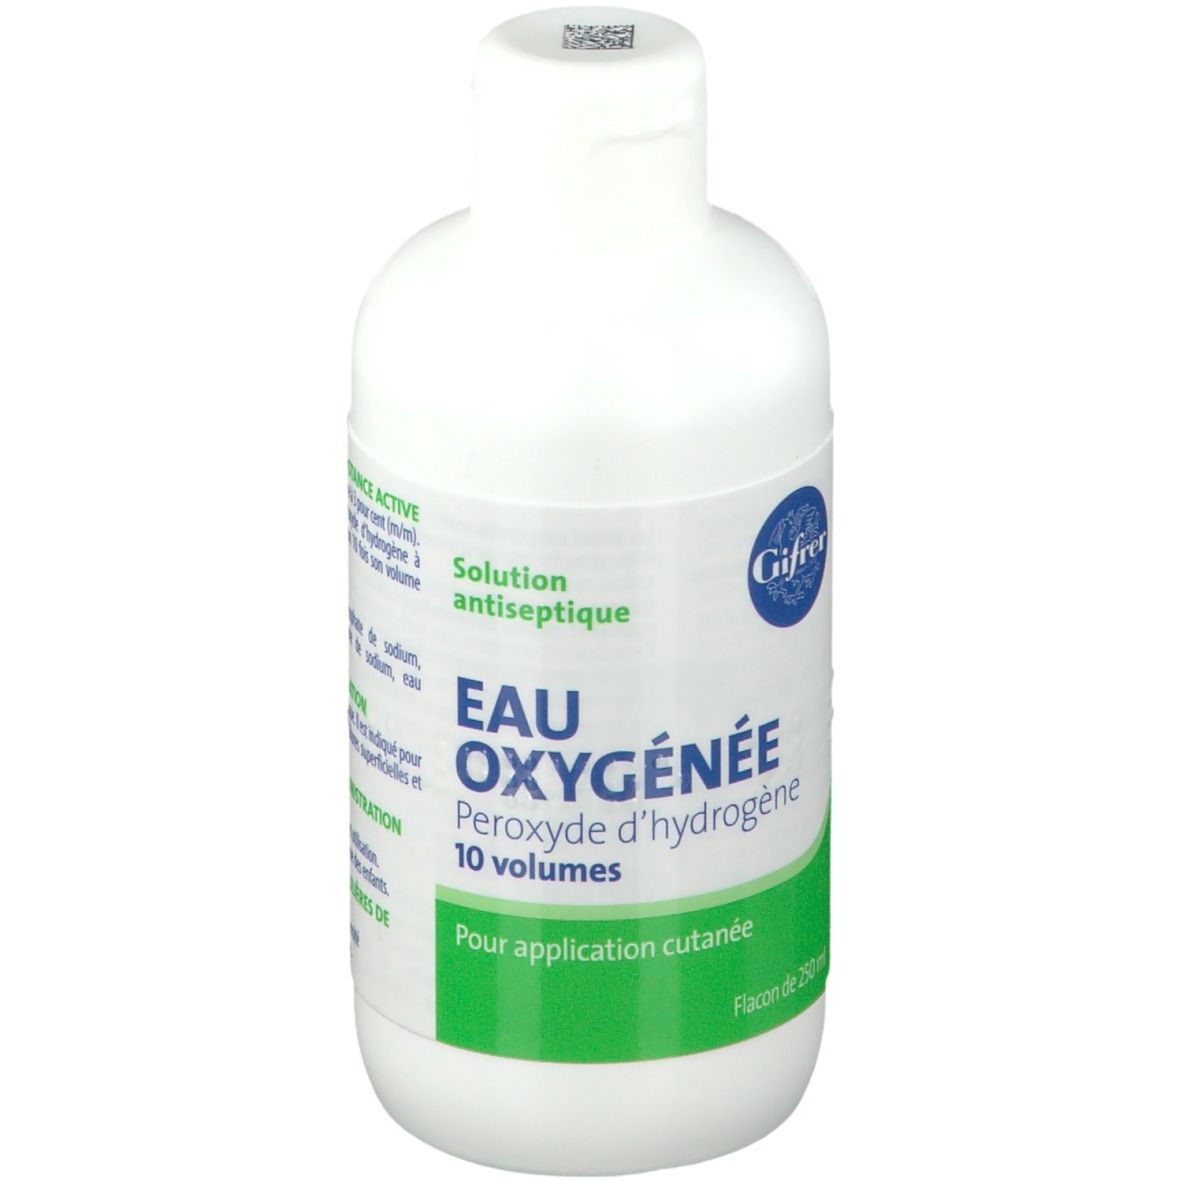 Gifrer Eau Oxygénée Solution Antiseptique 10 Volumes 250 ml